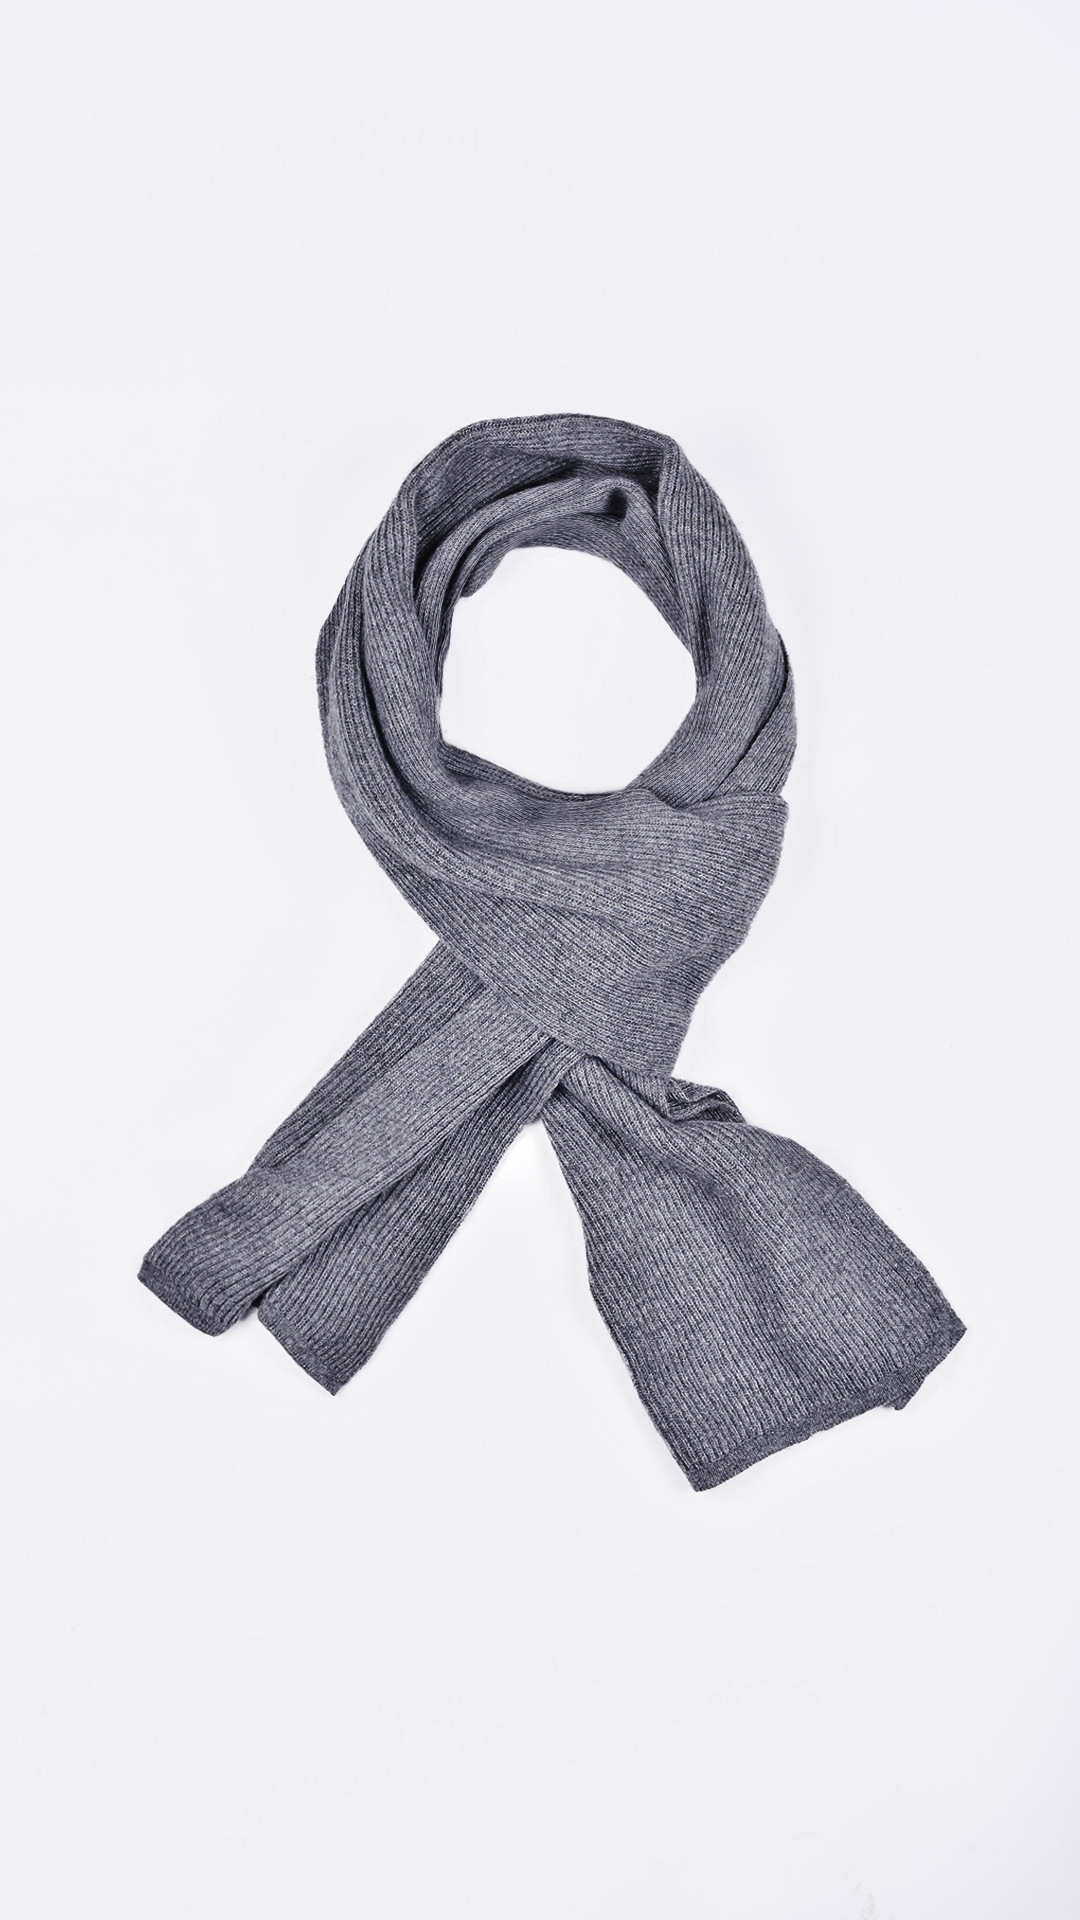 Tucdario grigio 2 1stAmerican sciarpa da uomo 50% lana 50% cashmere Made in Italy a coste larghe - calda sciarpa invernale